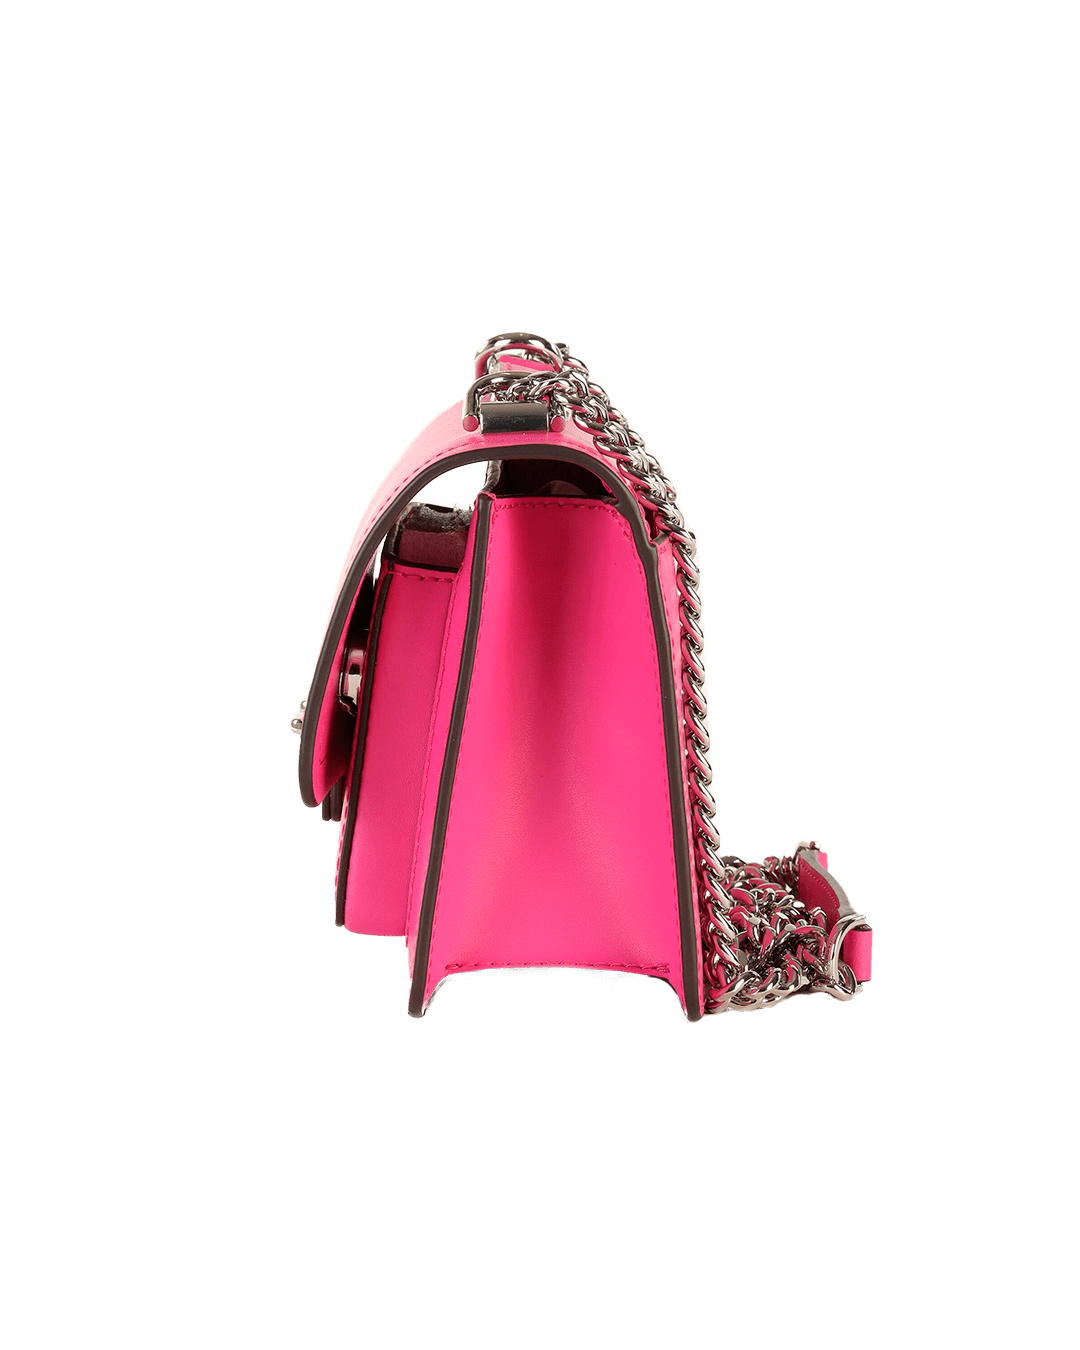 MICHAEL KORS Ženska torbica roze